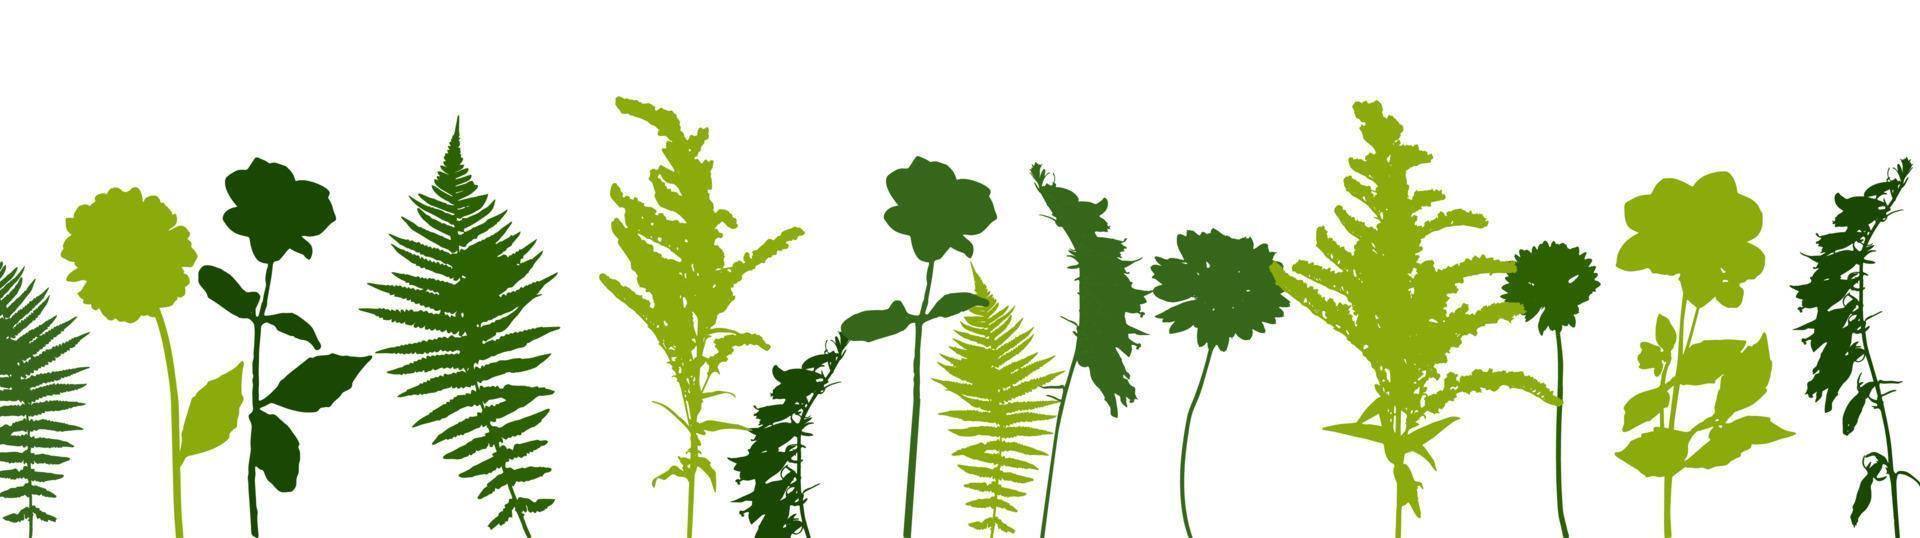 fougère brindille verte colorée et autres plantes de la nature. illustration vectorielle vecteur